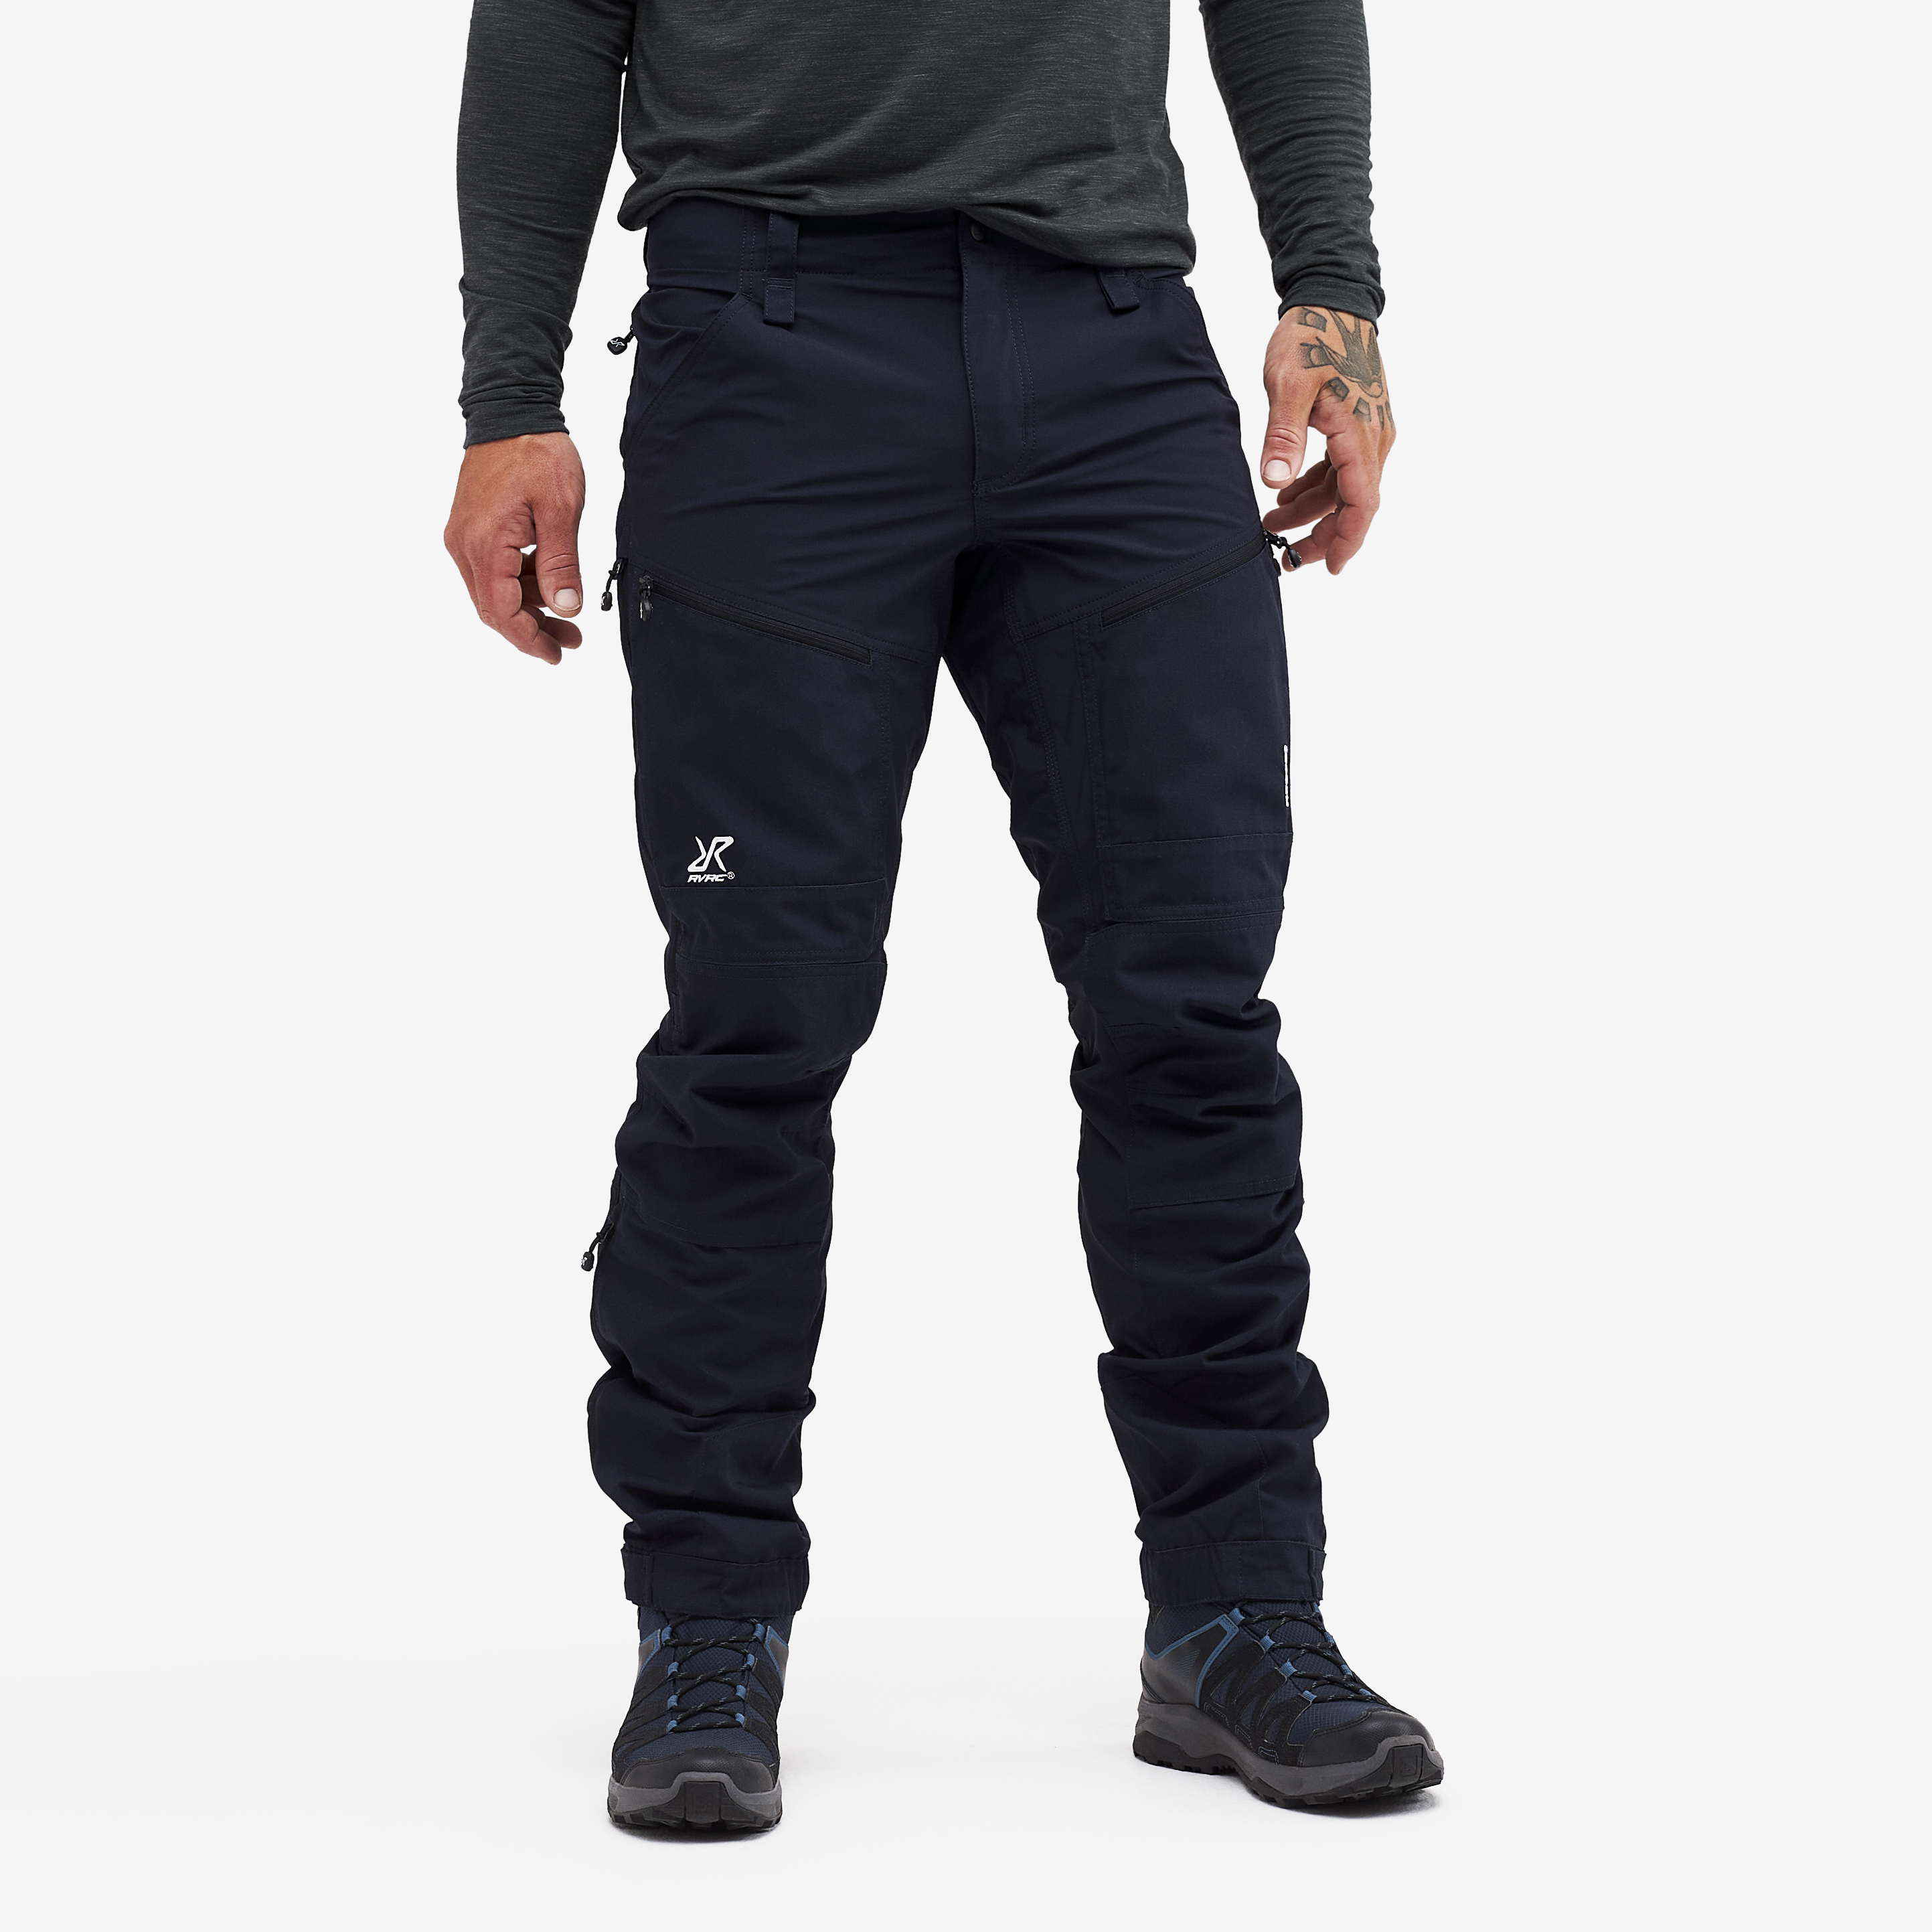 RVRC GP Pro Rescue Pants Peacemaker Blue 2.0 Men